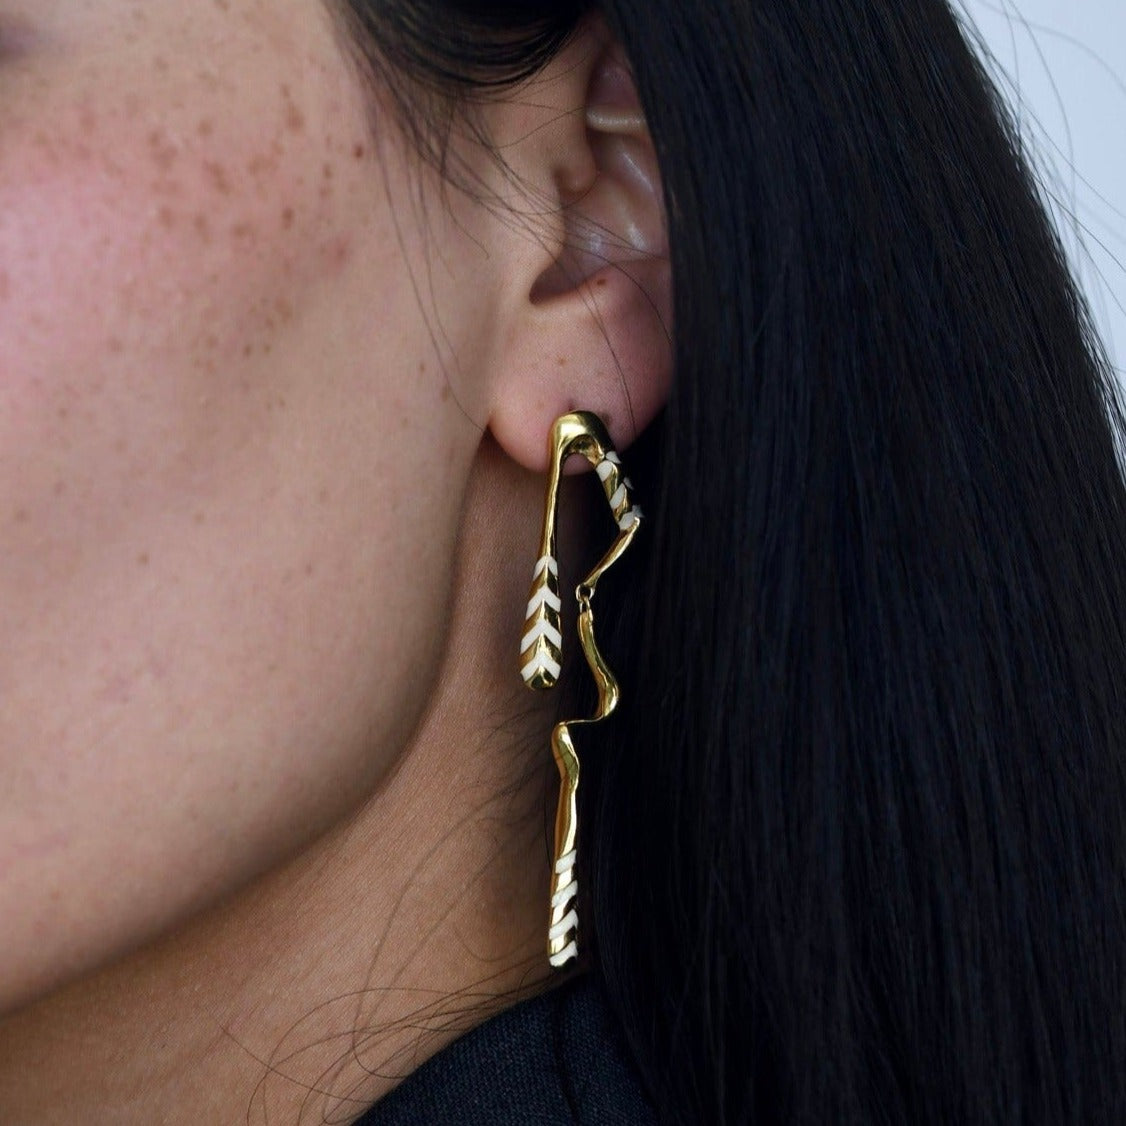 Office wear earrings gold plated design